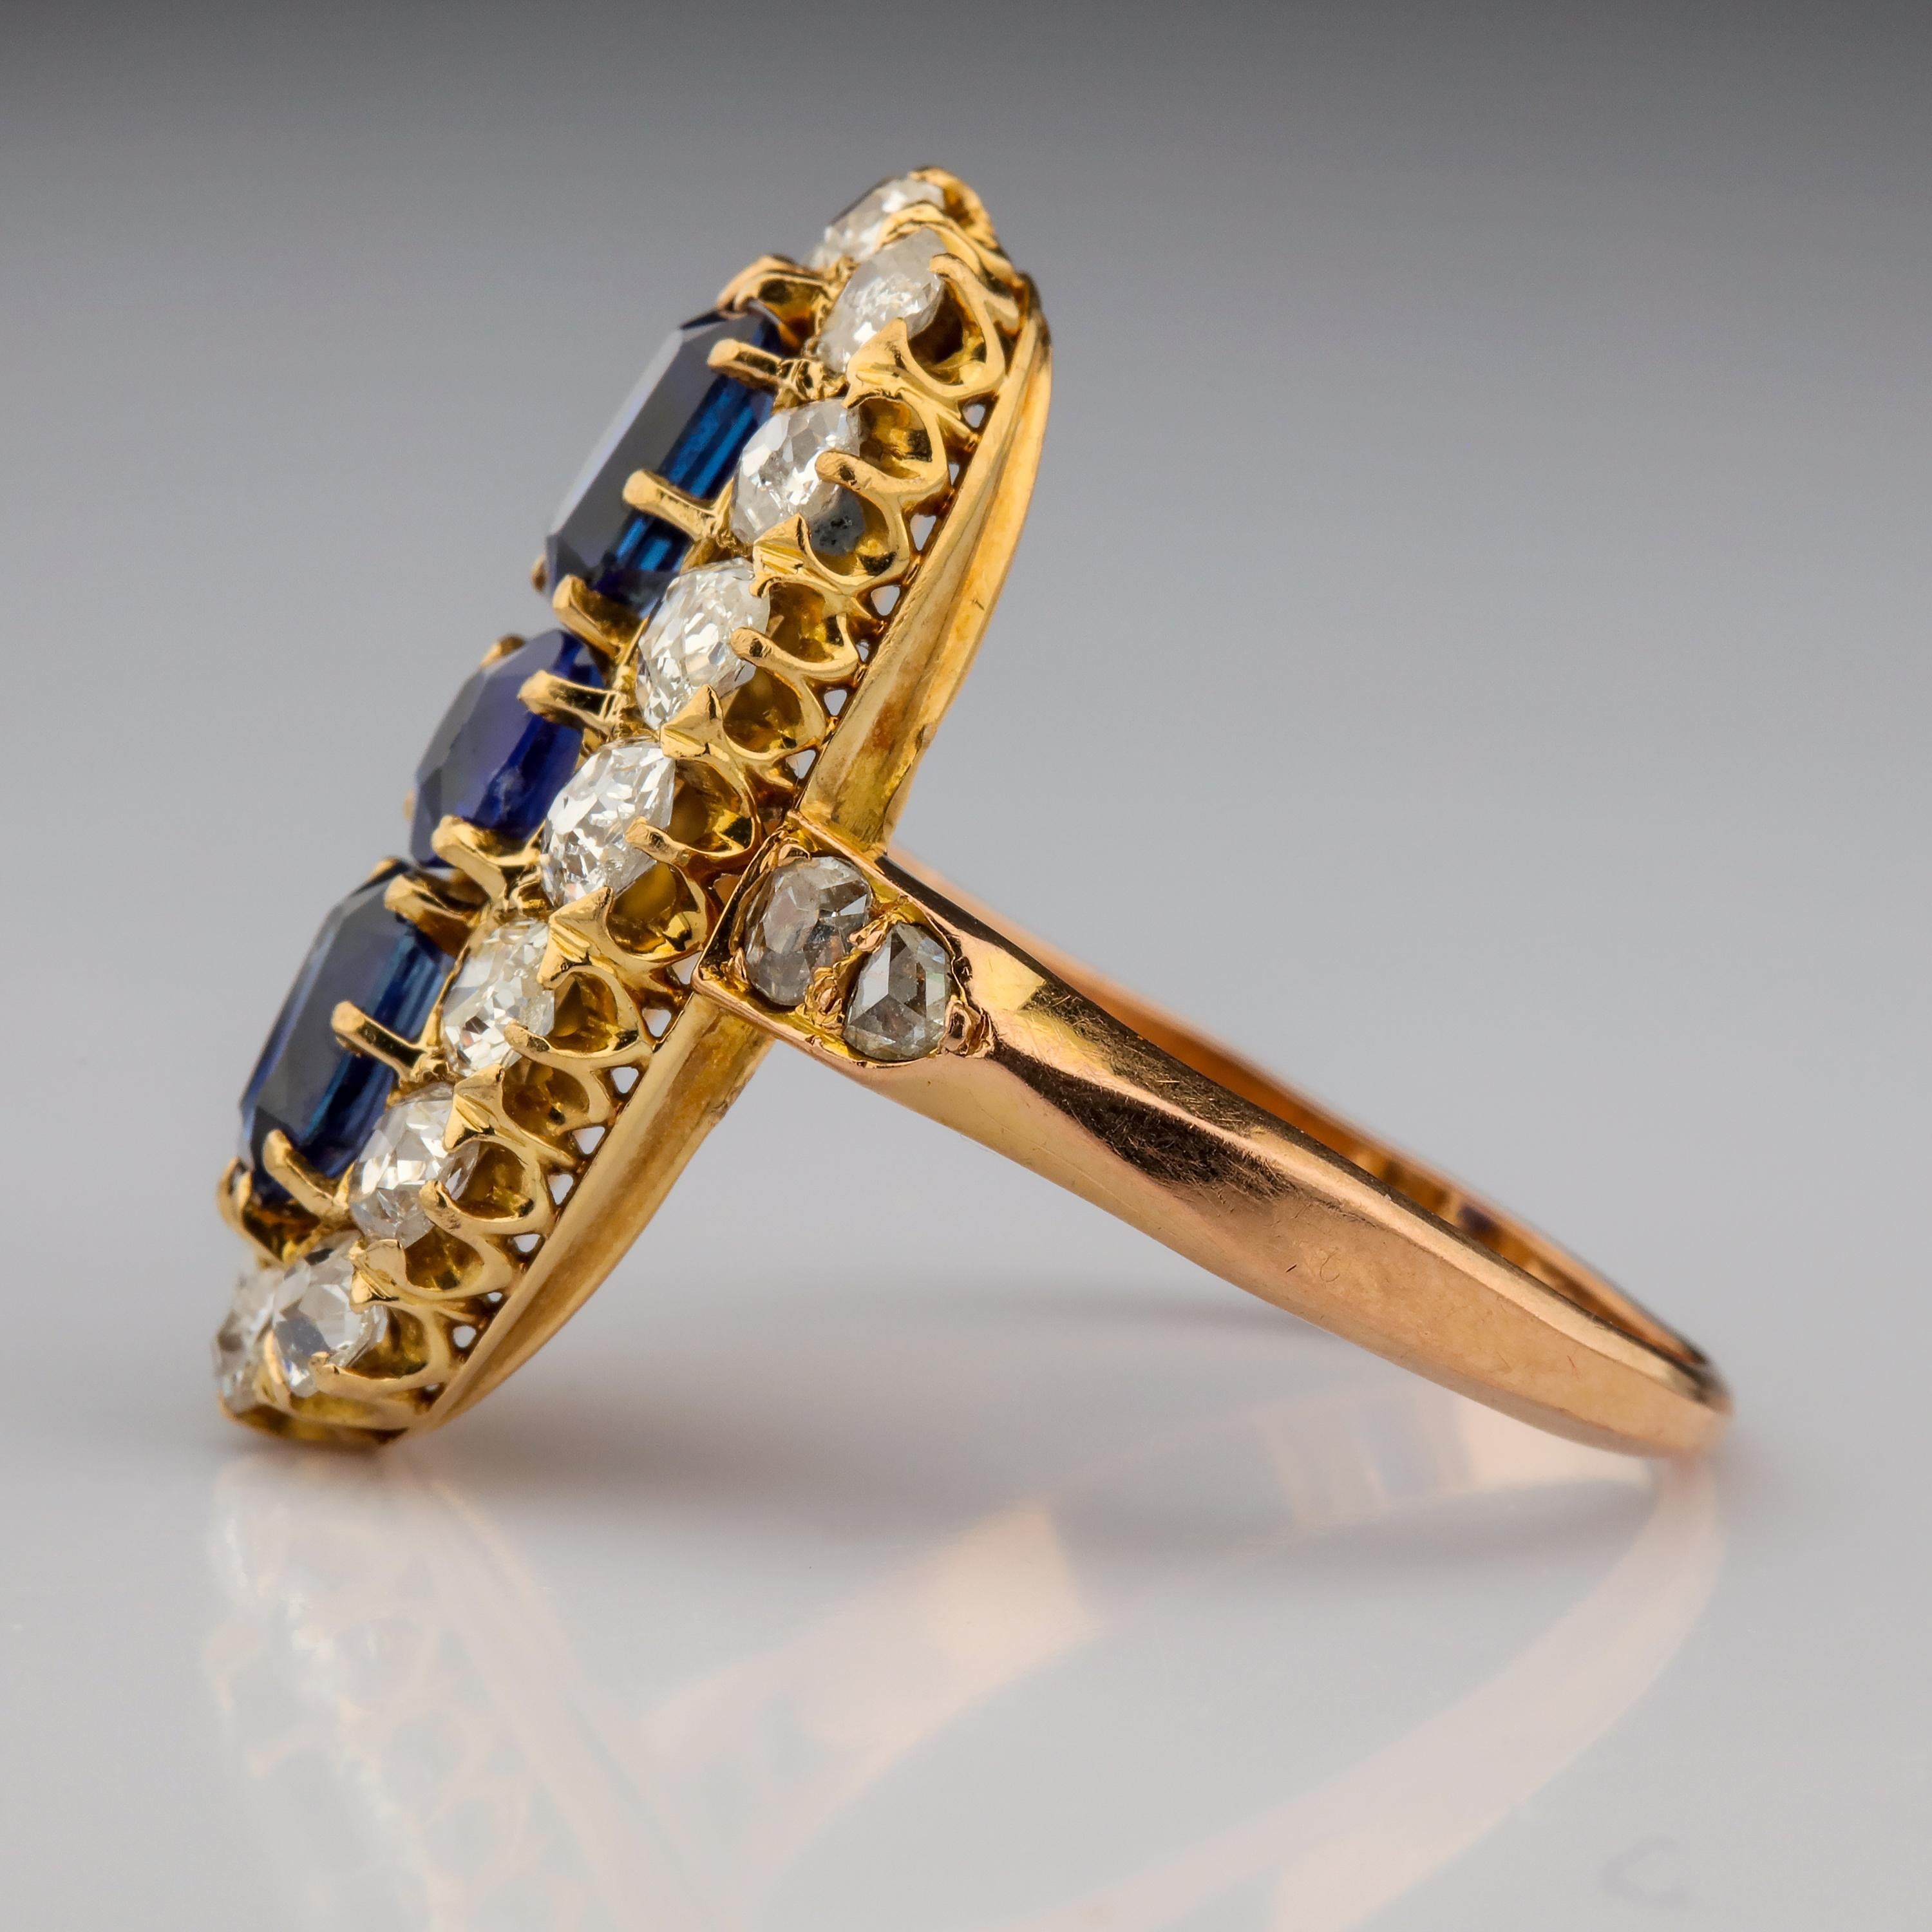 Baguette Cut Sapphire and Diamond Ring GIA Certified No-Heat Edwardian Era